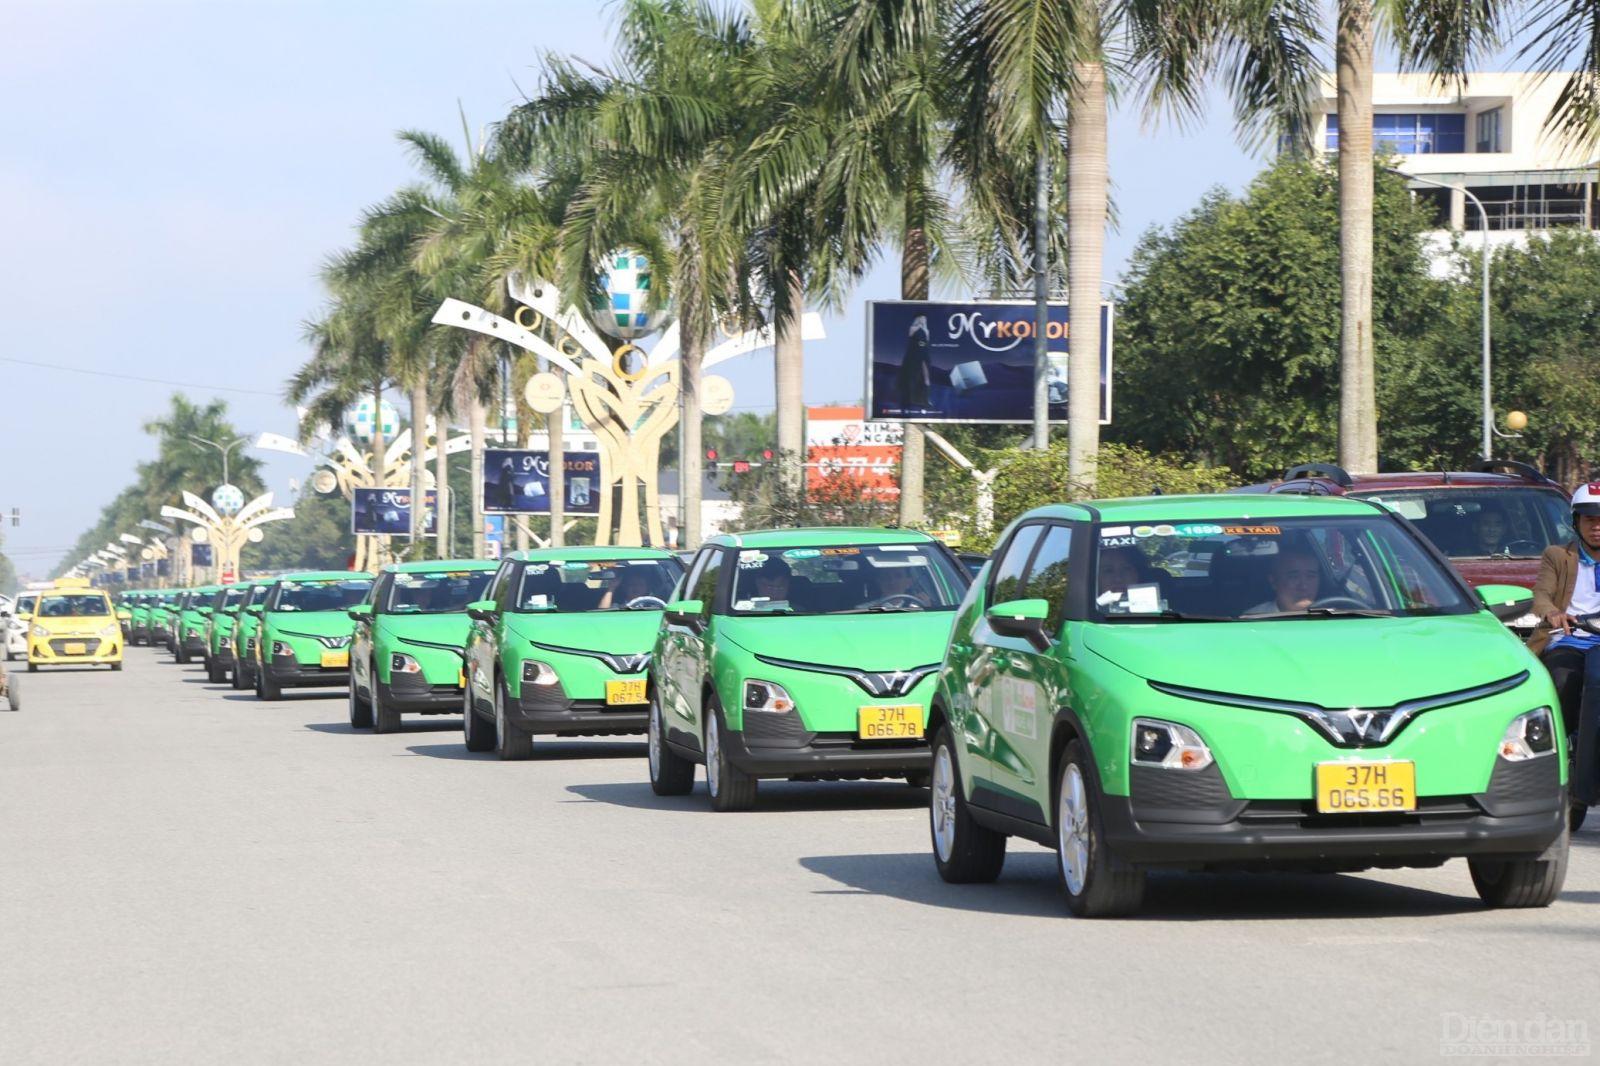 Chuyển đổi xanh trong hoạt động kinh doanh dịch vụ vận tải hành khách đang là hướng đi mới được các cấp ngành, chính quyền tỉnh Nghệ An và doanh nghiệp đặc biệt quan tâm, chú trọng